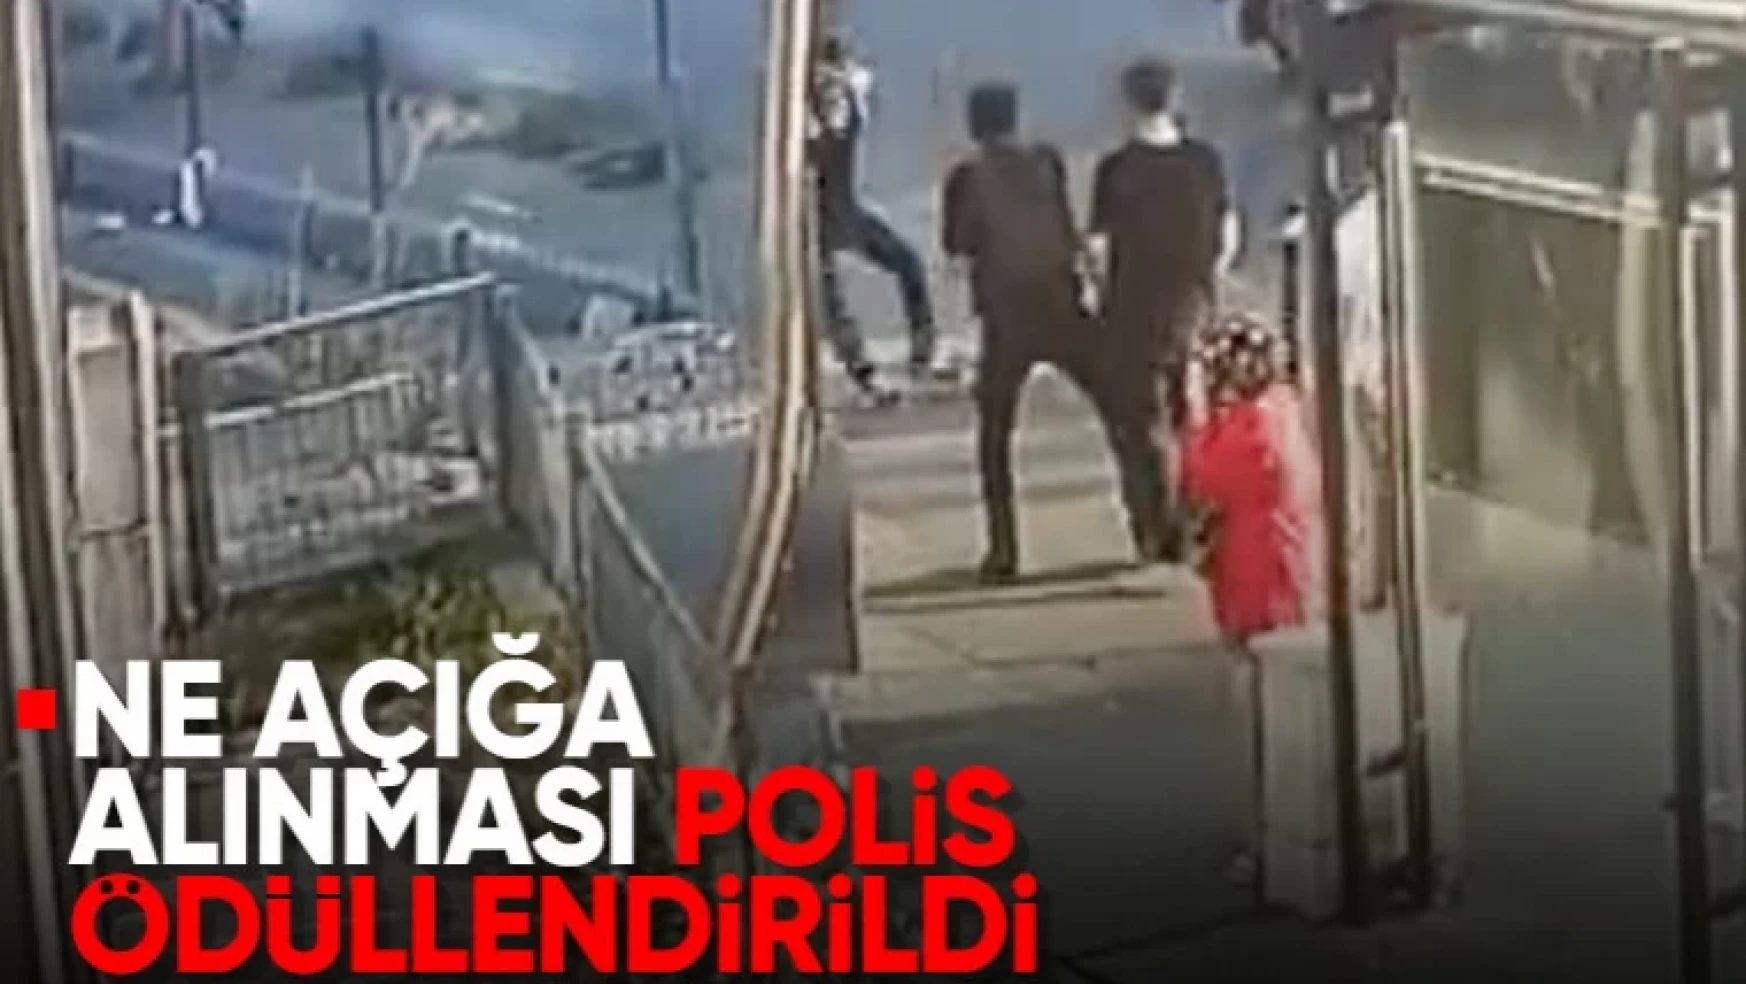 İstanbul'da bıçaklı saldırgana polis müdahalesi: Açığa alındı iddiası yalan çıktı